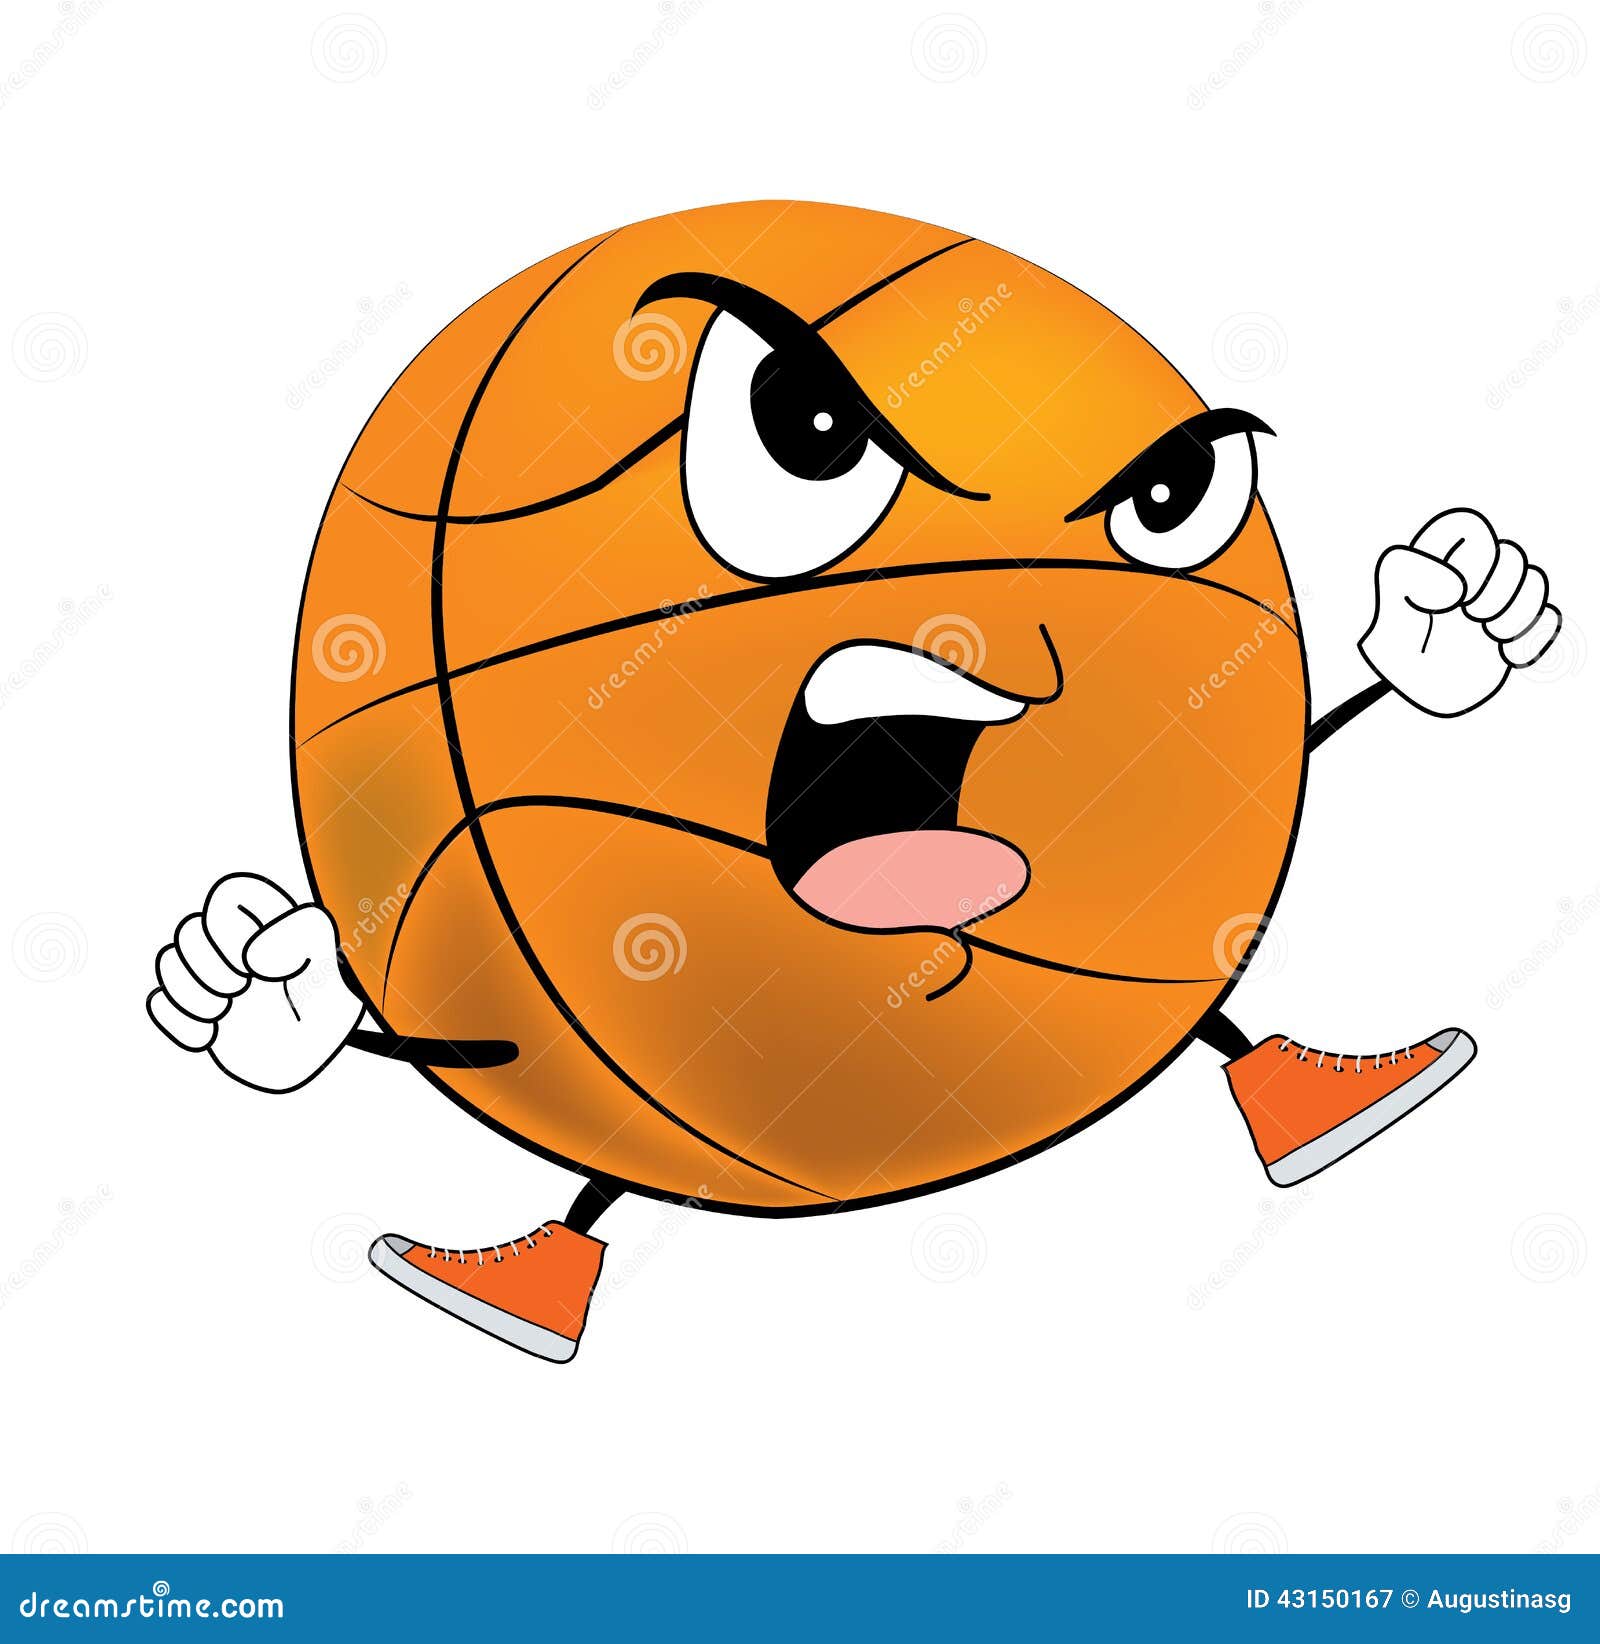 Angry Basketball Ball Cartoon Stock Illustration ...